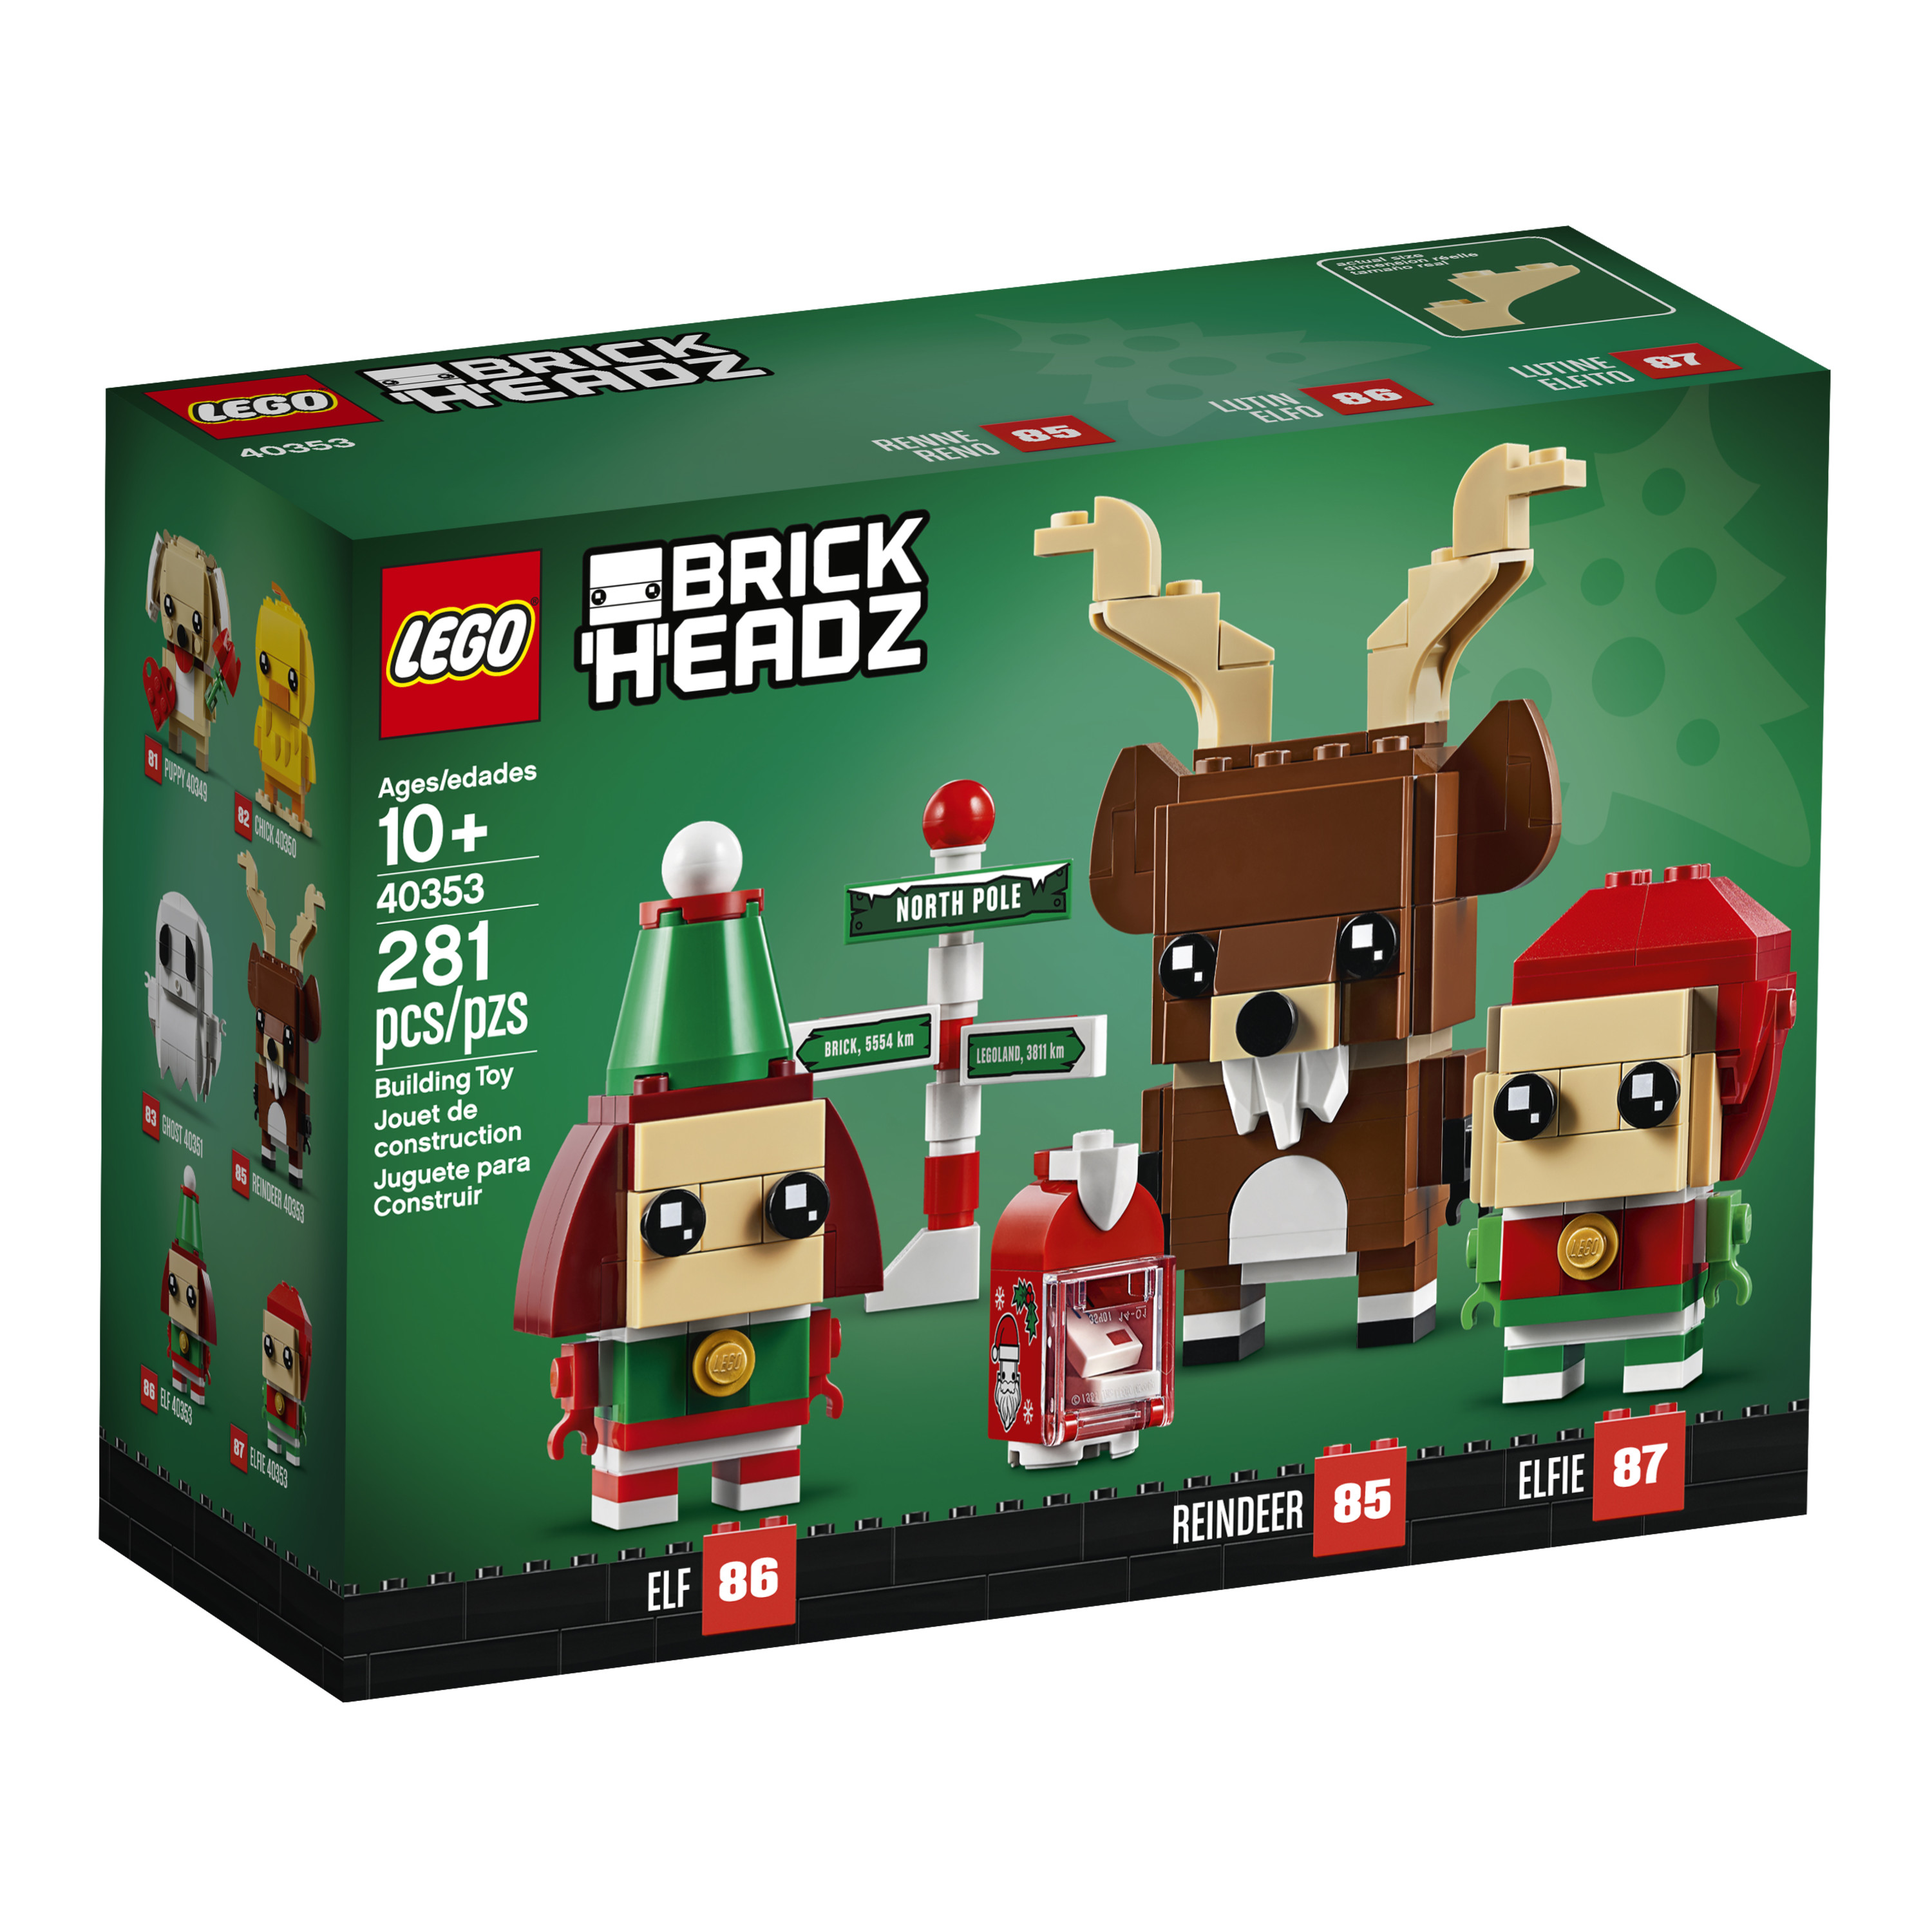 LEGO Brickheadz Reindeer, Elf and Elfie 40353 Building Toy (281 Pieces) - image 3 of 10